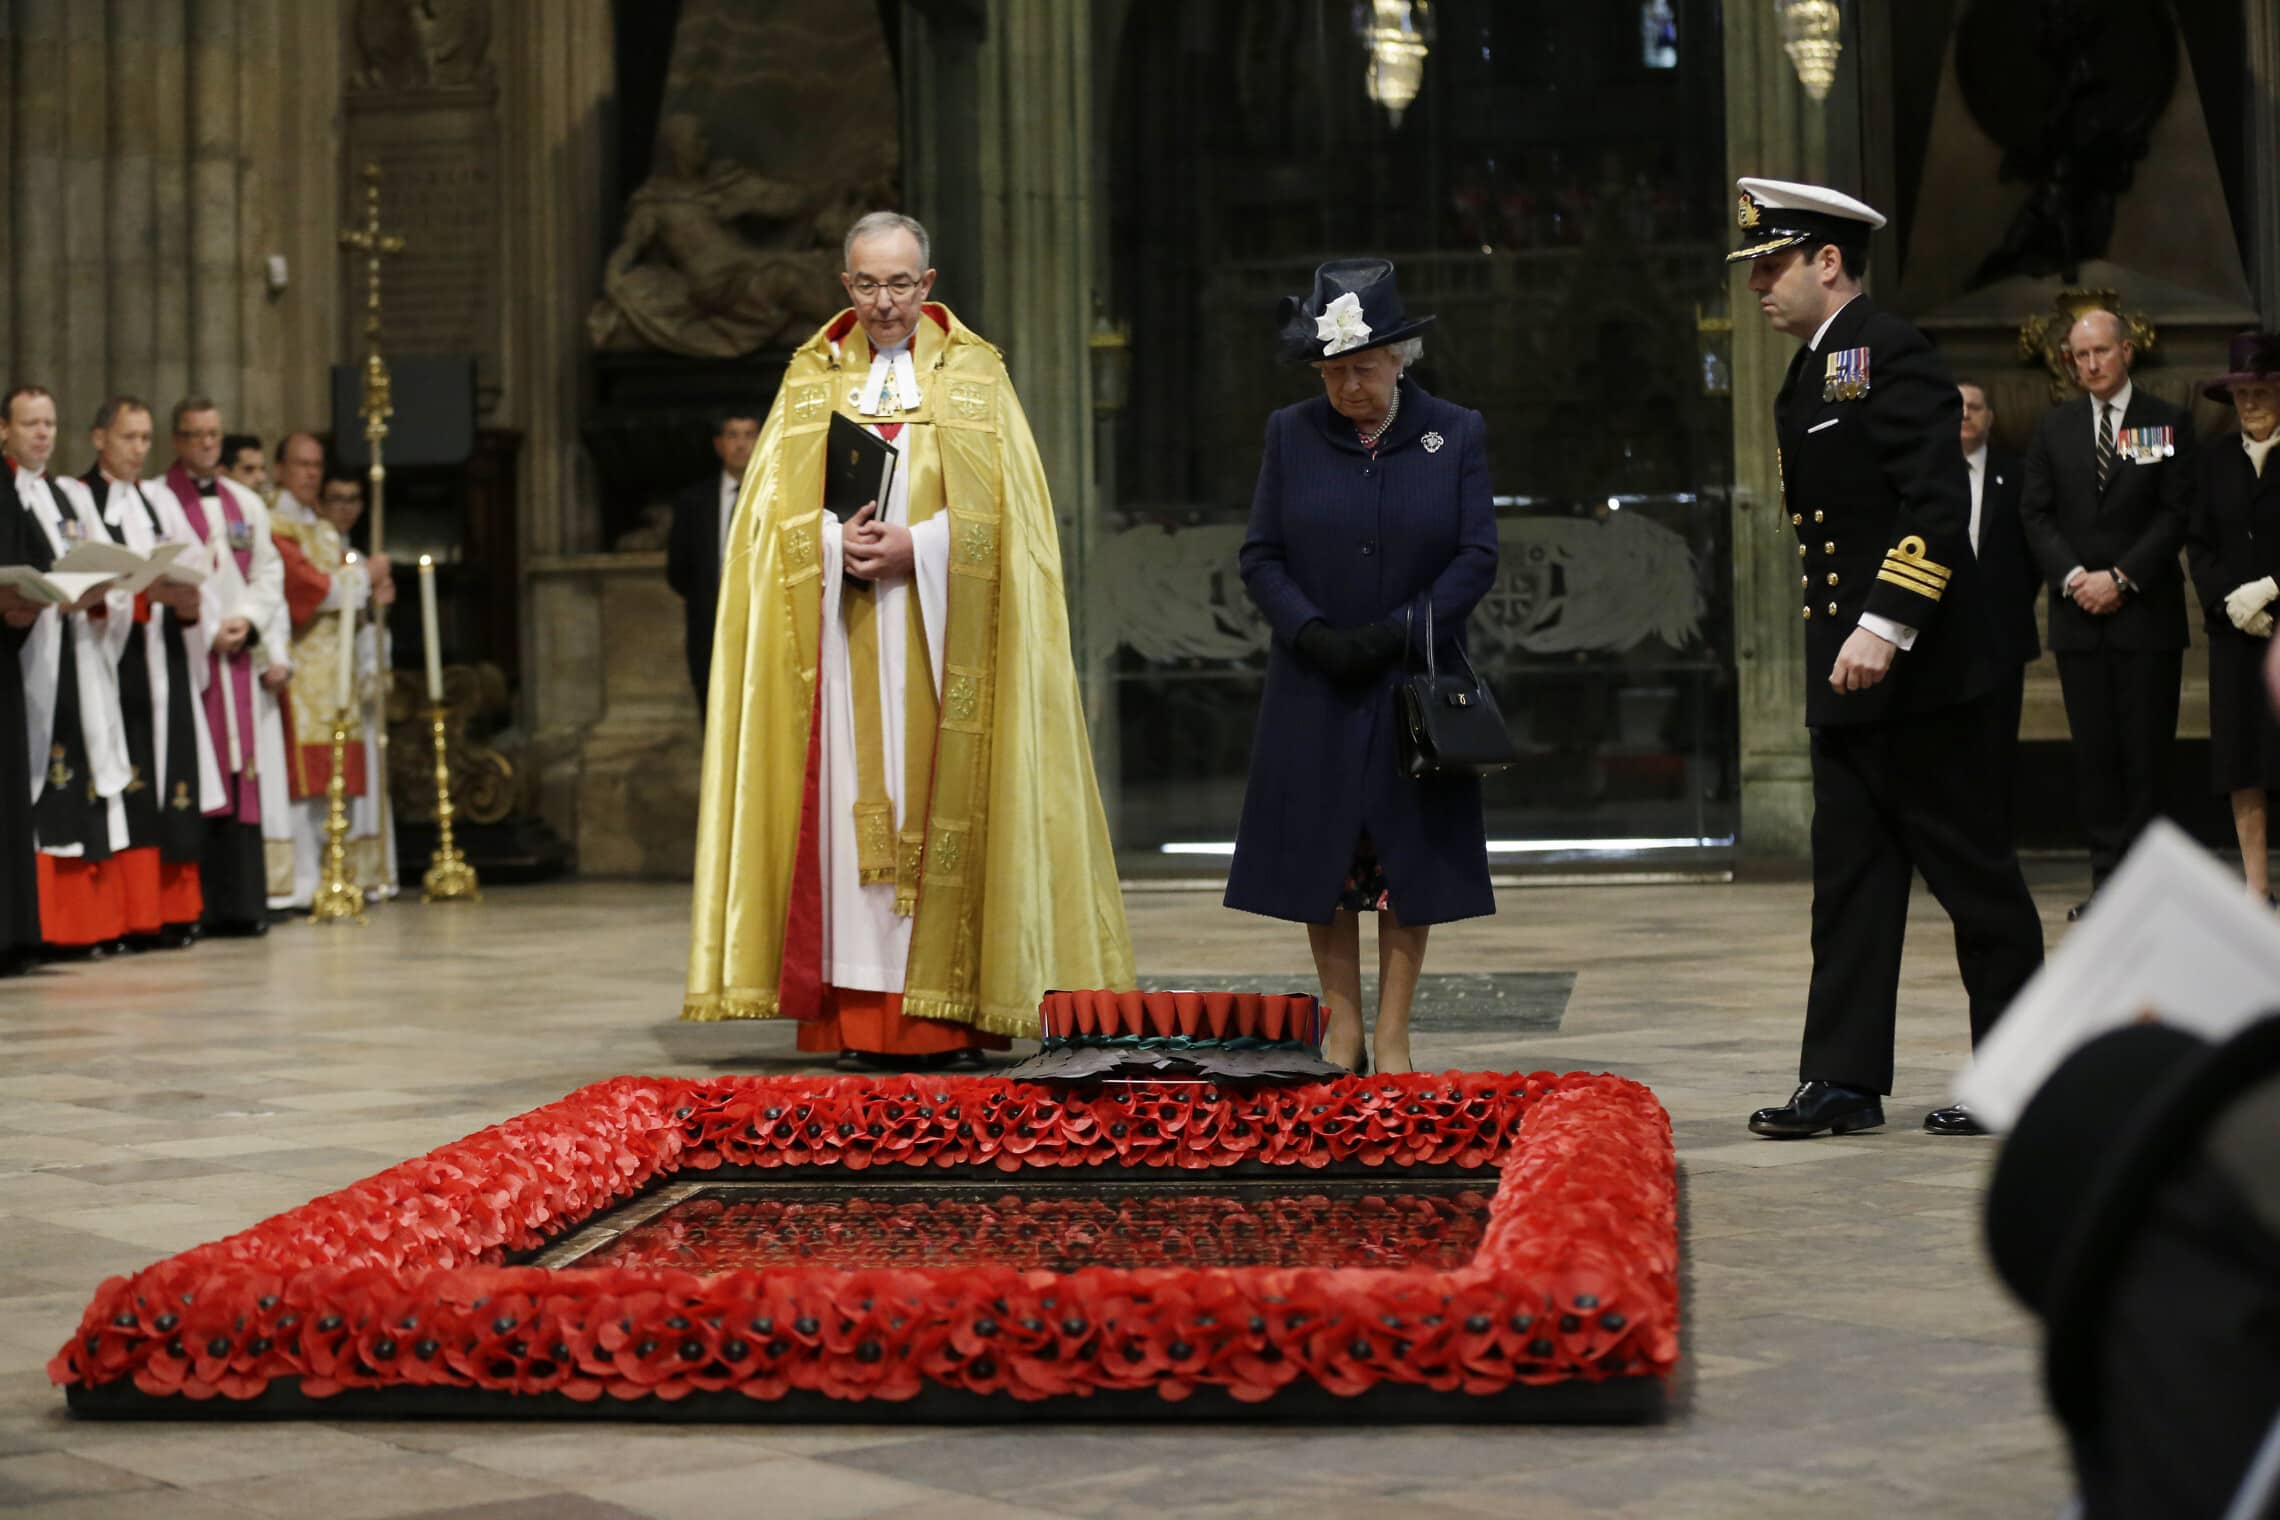 המלכה אליזבת השנייה וראש כנסיית וסטמינסטר עומדים לרגלי קבר החייל האלמוני בלב הכנסייה, במלאת 70 שנה לניצחון בנורמנדי, 10 במאי 2015 (צילום: AP Photo/Matt Dunham)